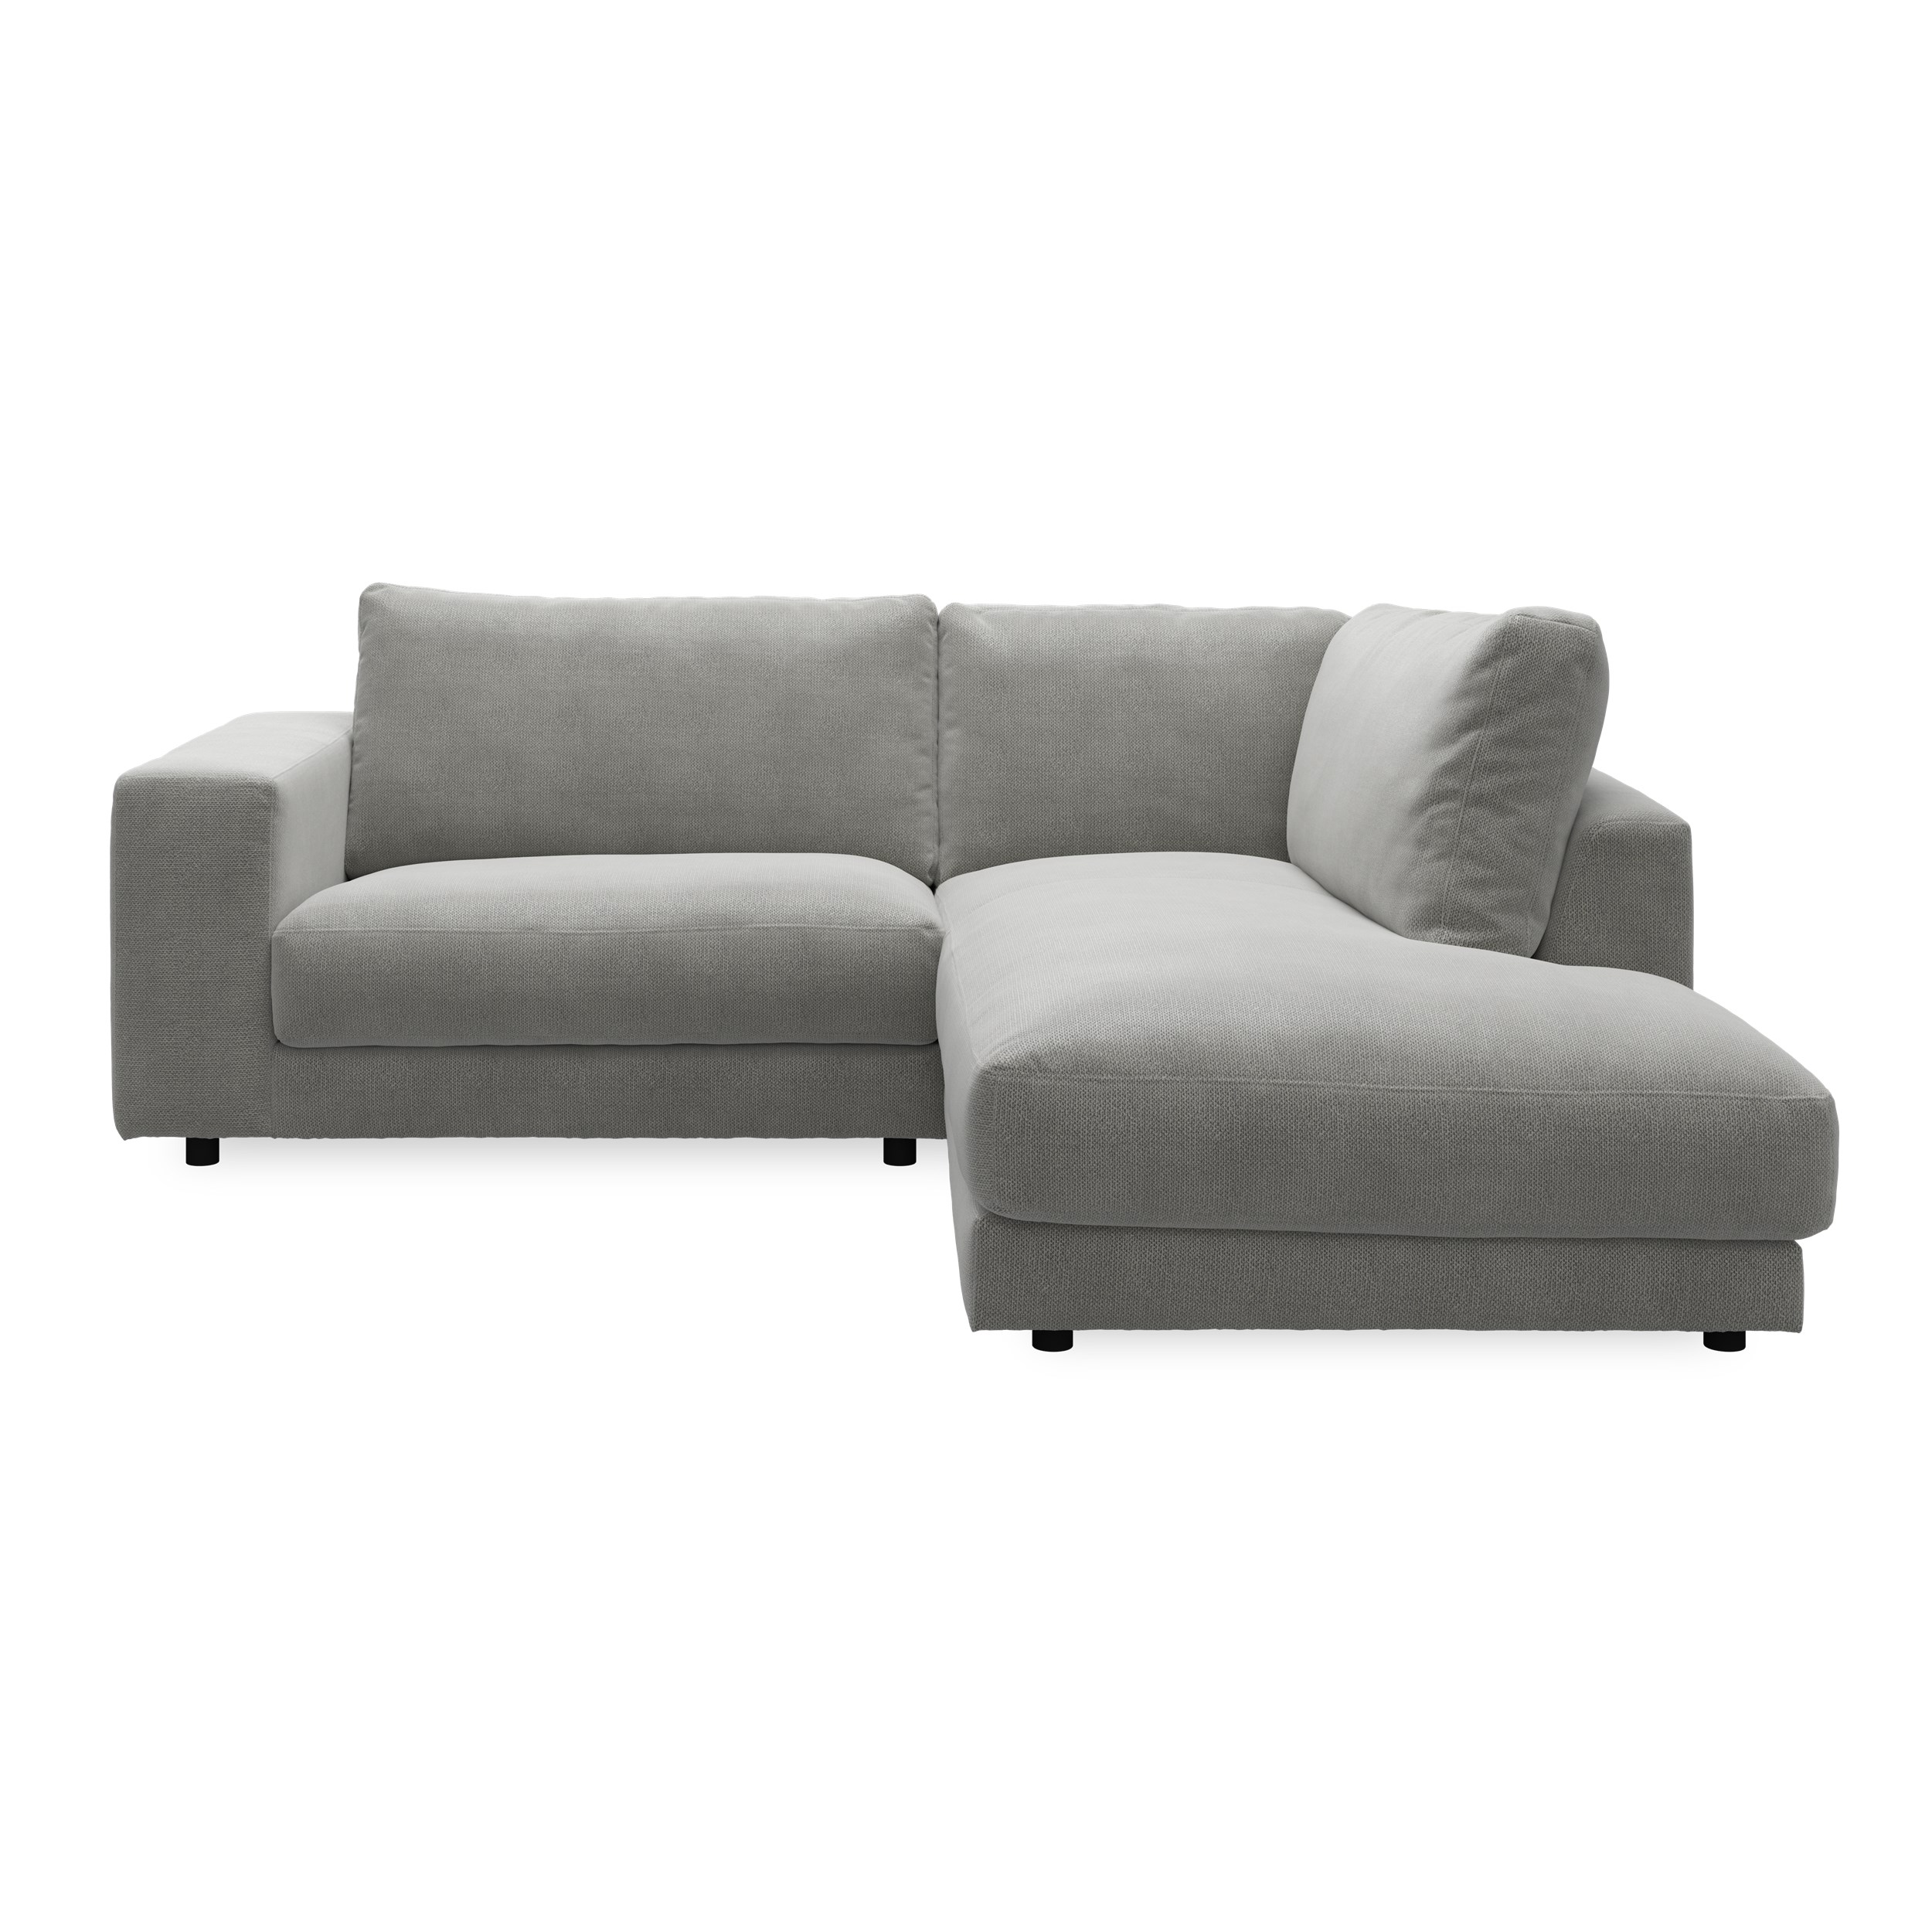 Bennent högervänd soffa med divan - Picasso Anthrazit klädsel, ben i svart plast och S:skum/fib/din/sili R:Dun/skum